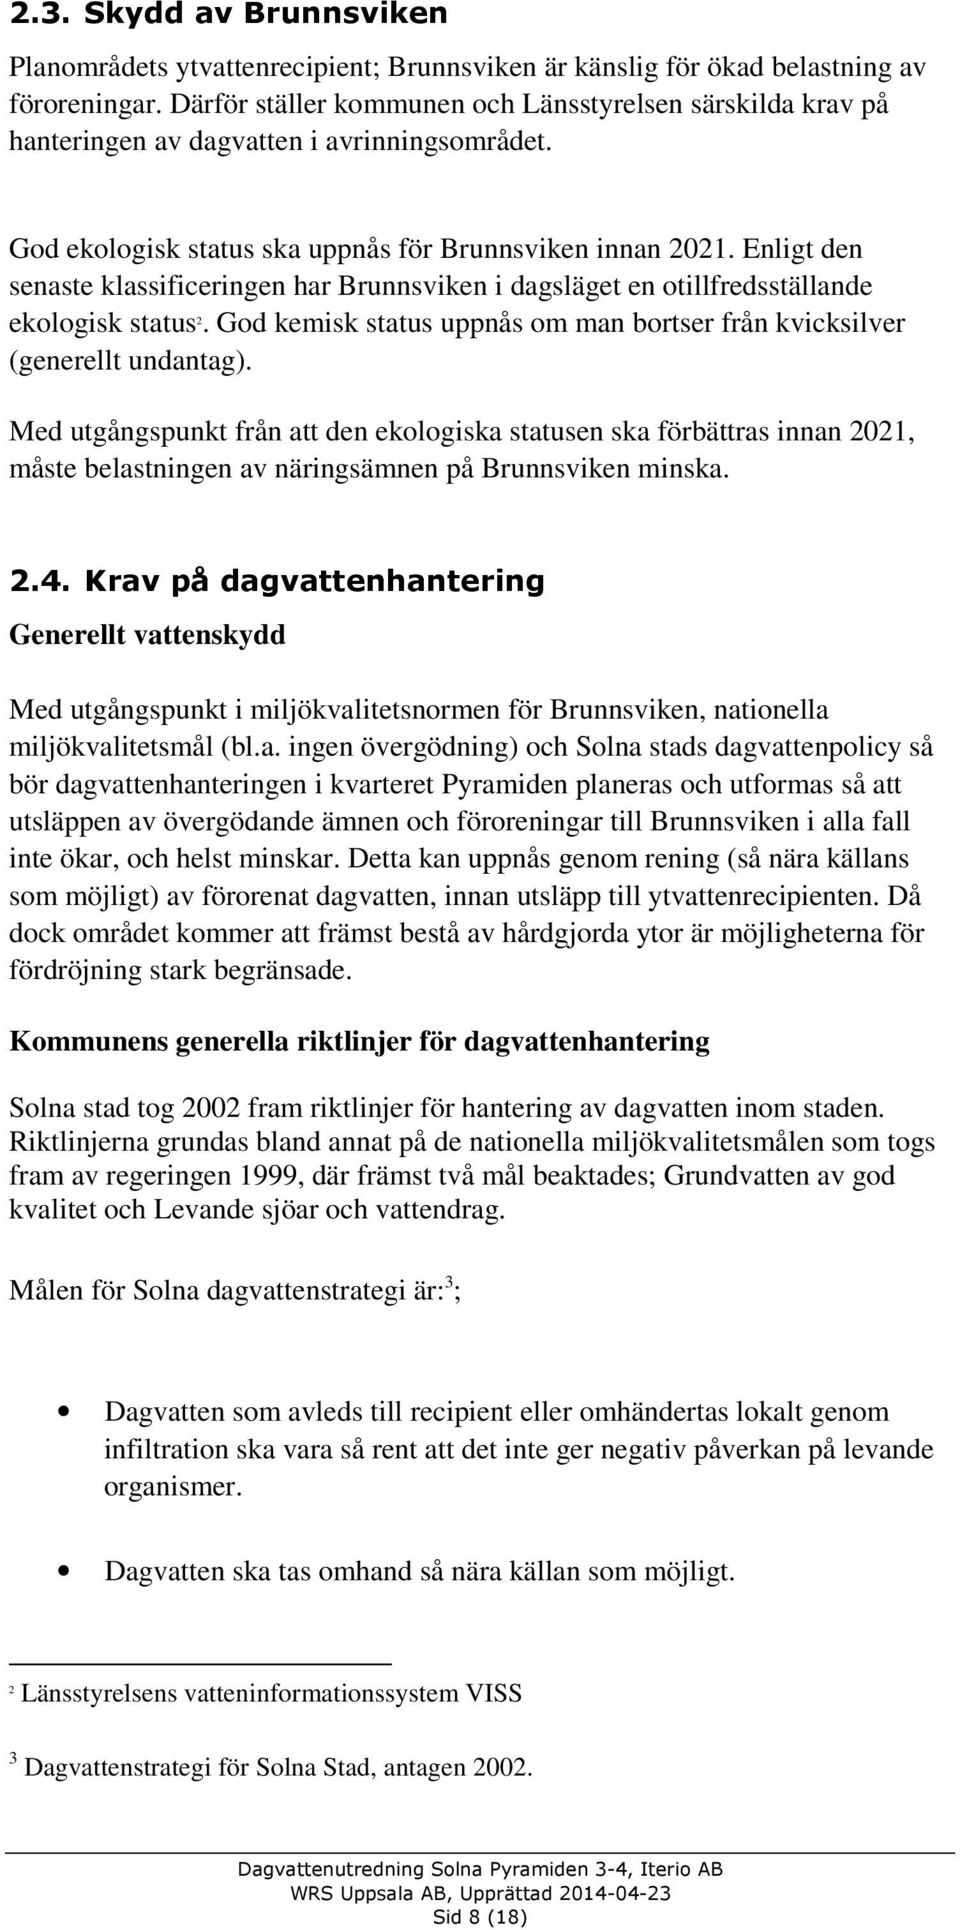 Enligt den senaste klassificeringen har Brunnsviken i dagsläget en otillfredsställande ekologisk status 2. God kemisk status uppnås om man bortser från kvicksilver (generellt undantag).